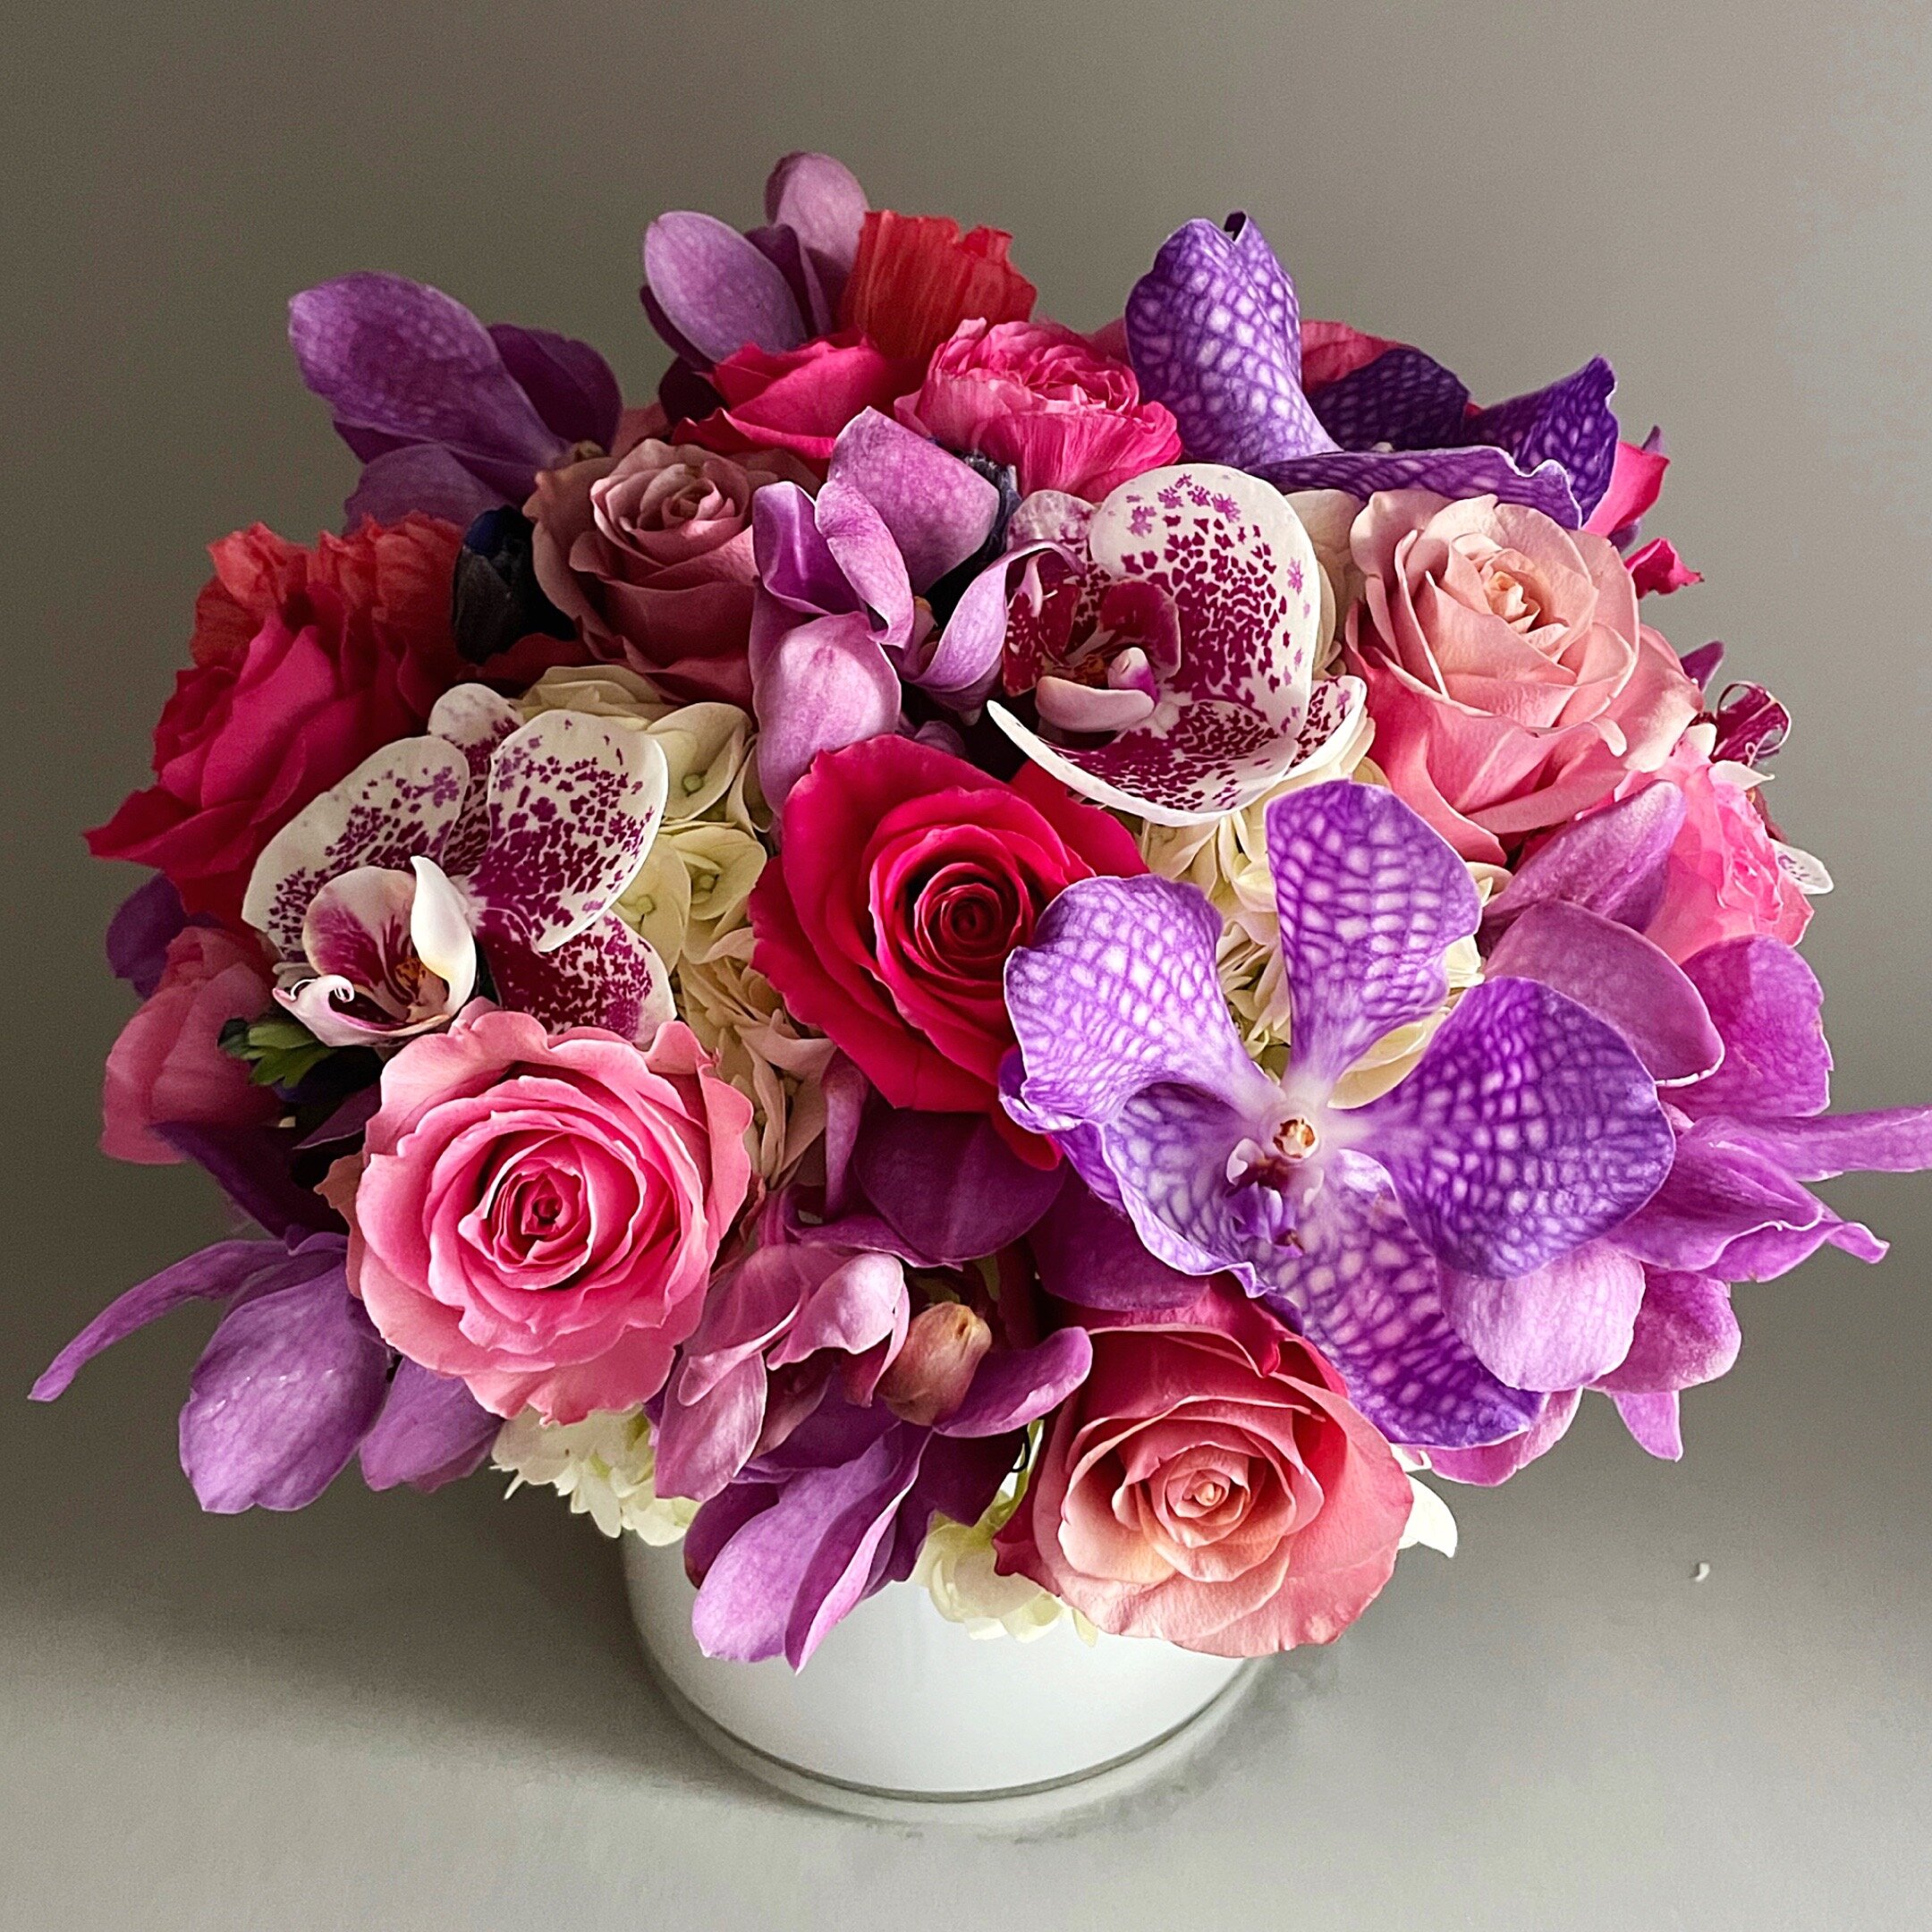 Flowers in Bloom Bouquet - Atelier Ashley